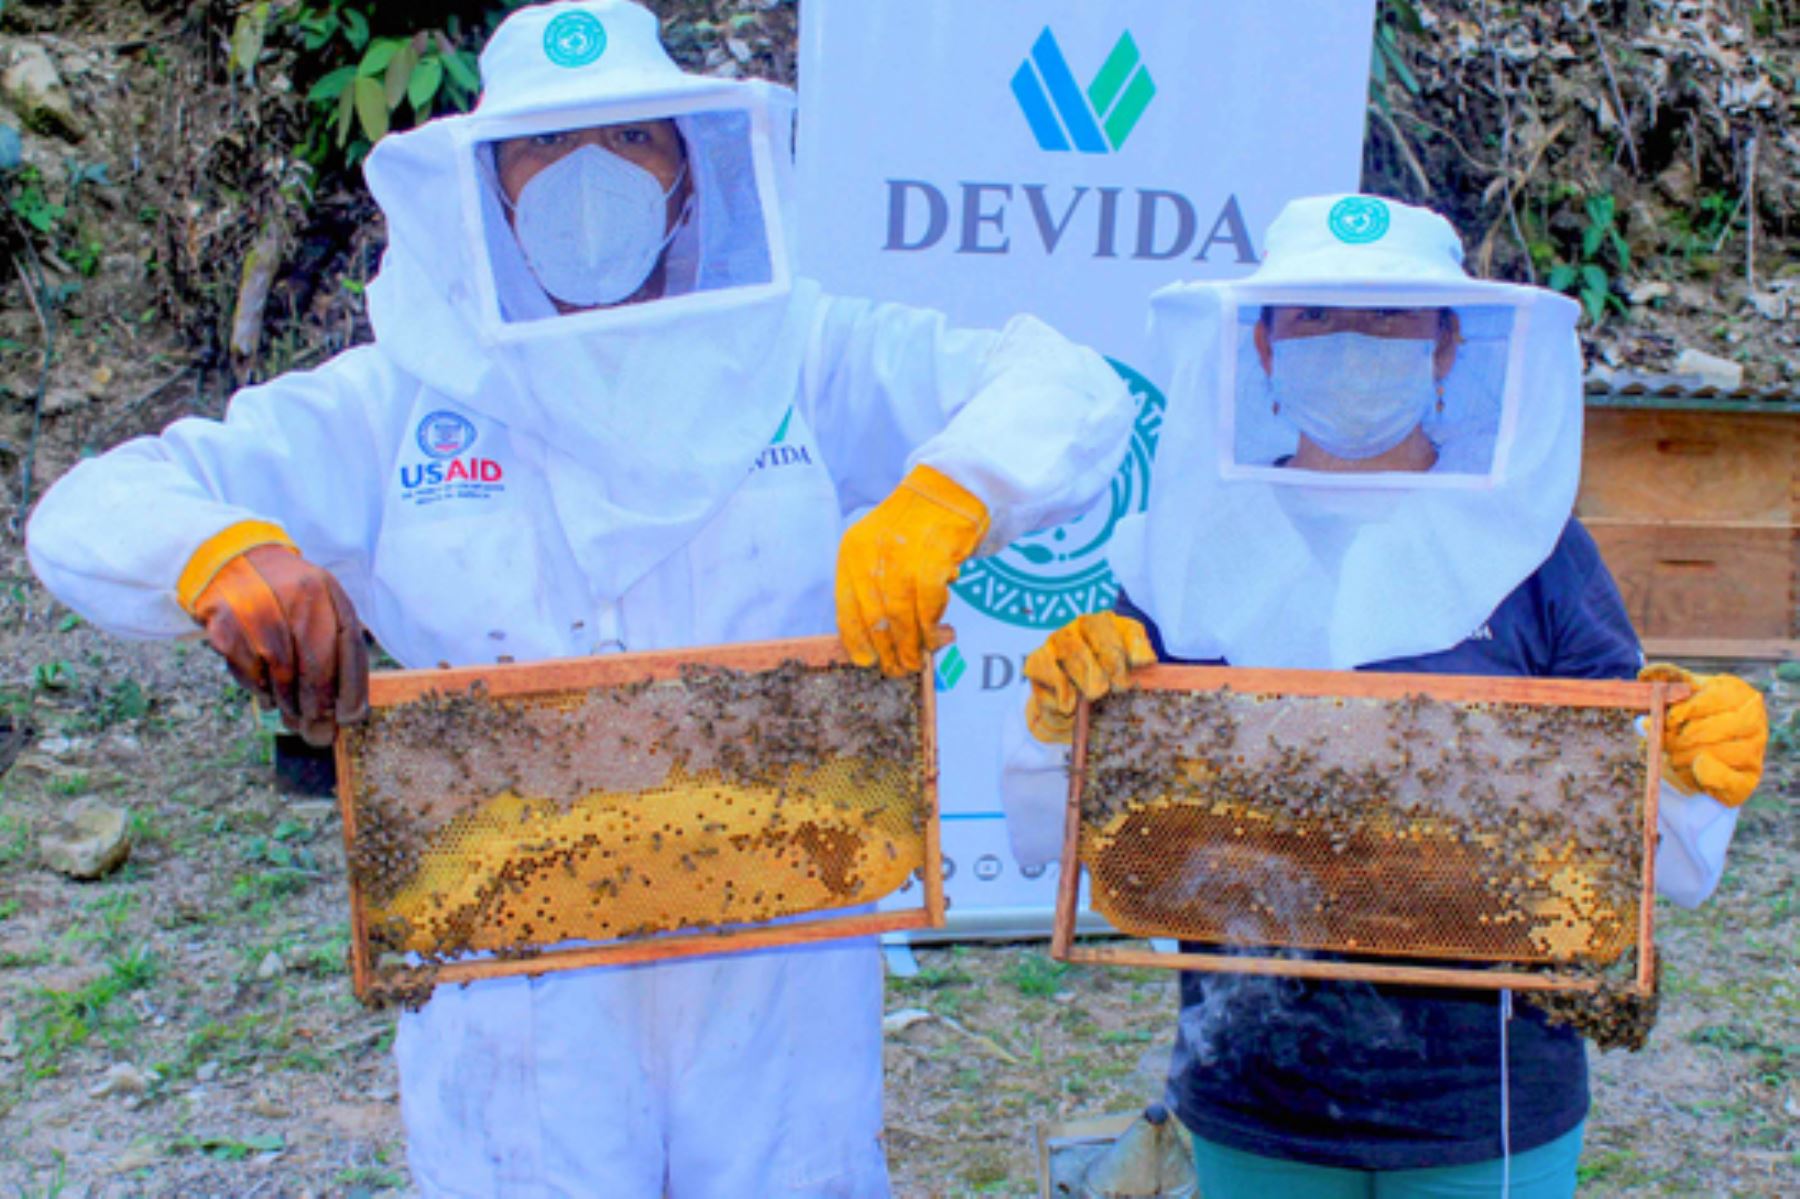 La primera cosecha de miel se tendrá en seis meses y ascenderá a alrededor de 86,400 kilos. Foto: ANDINA/Devida.